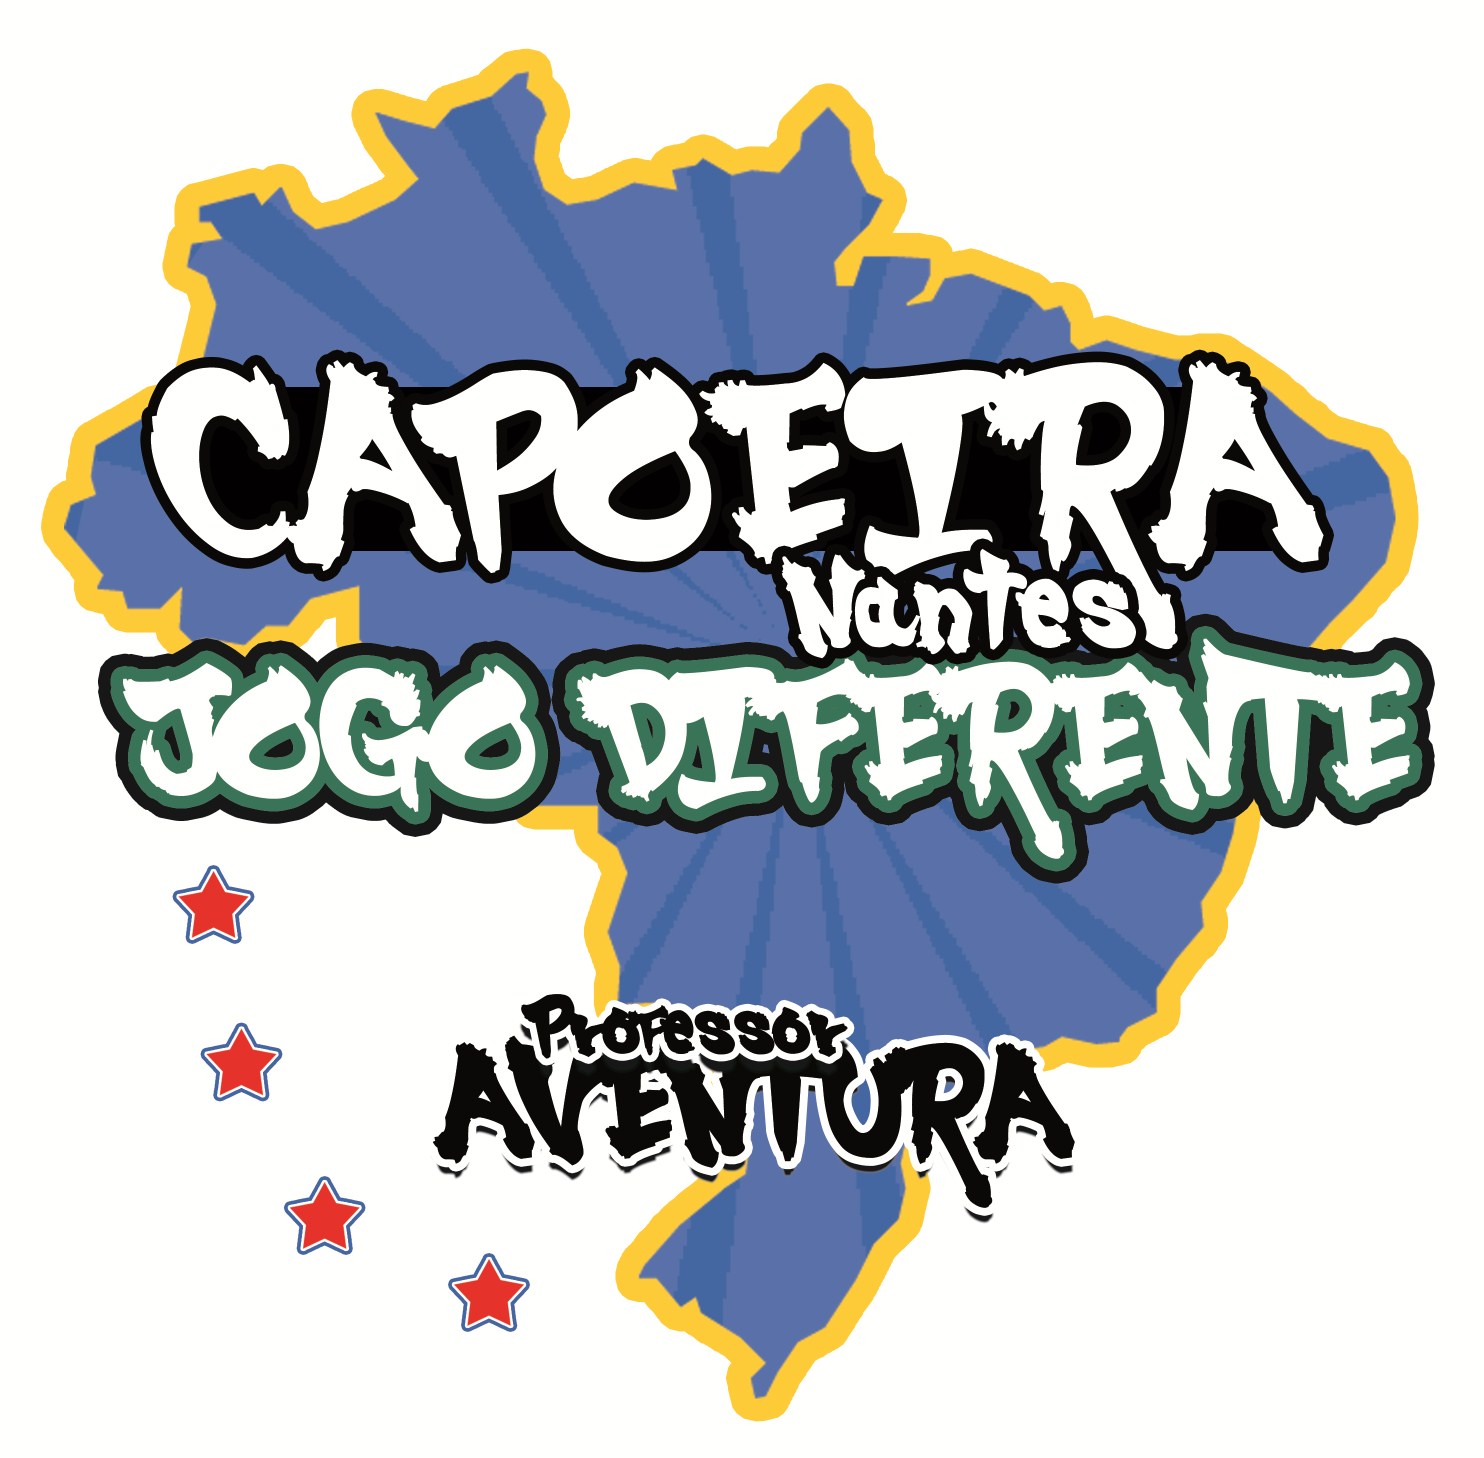 Association Sportive et Culturelle de Capoeira Nantes Jogo Diferente